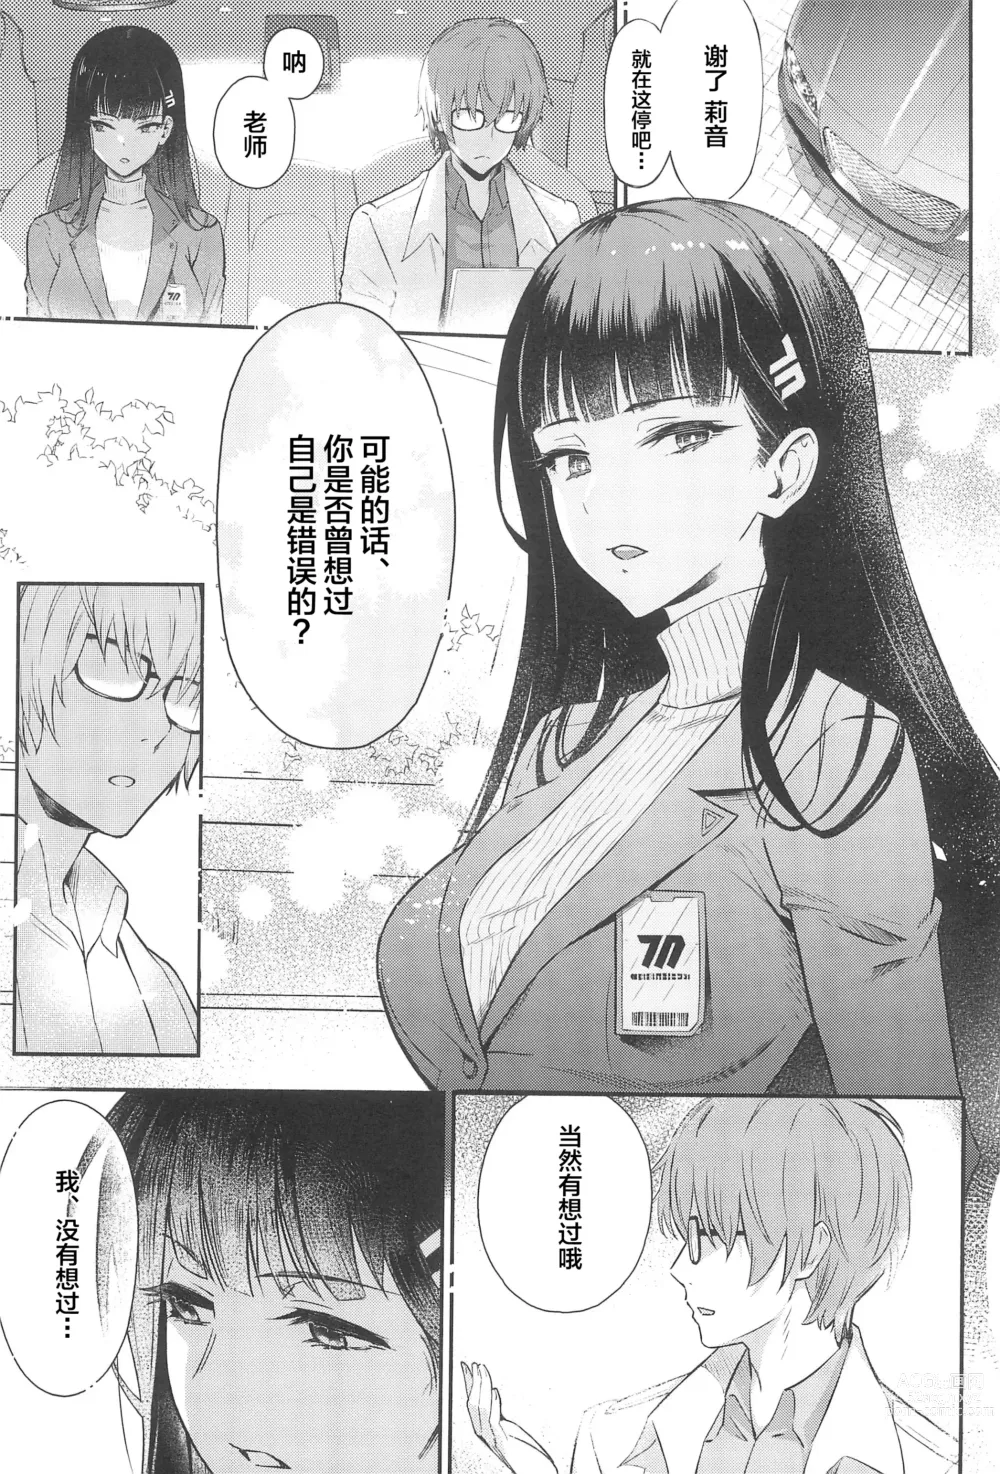 Page 6 of doujinshi Rio-chan wa Otosaretai. - Rio Want To Be Fall in Love